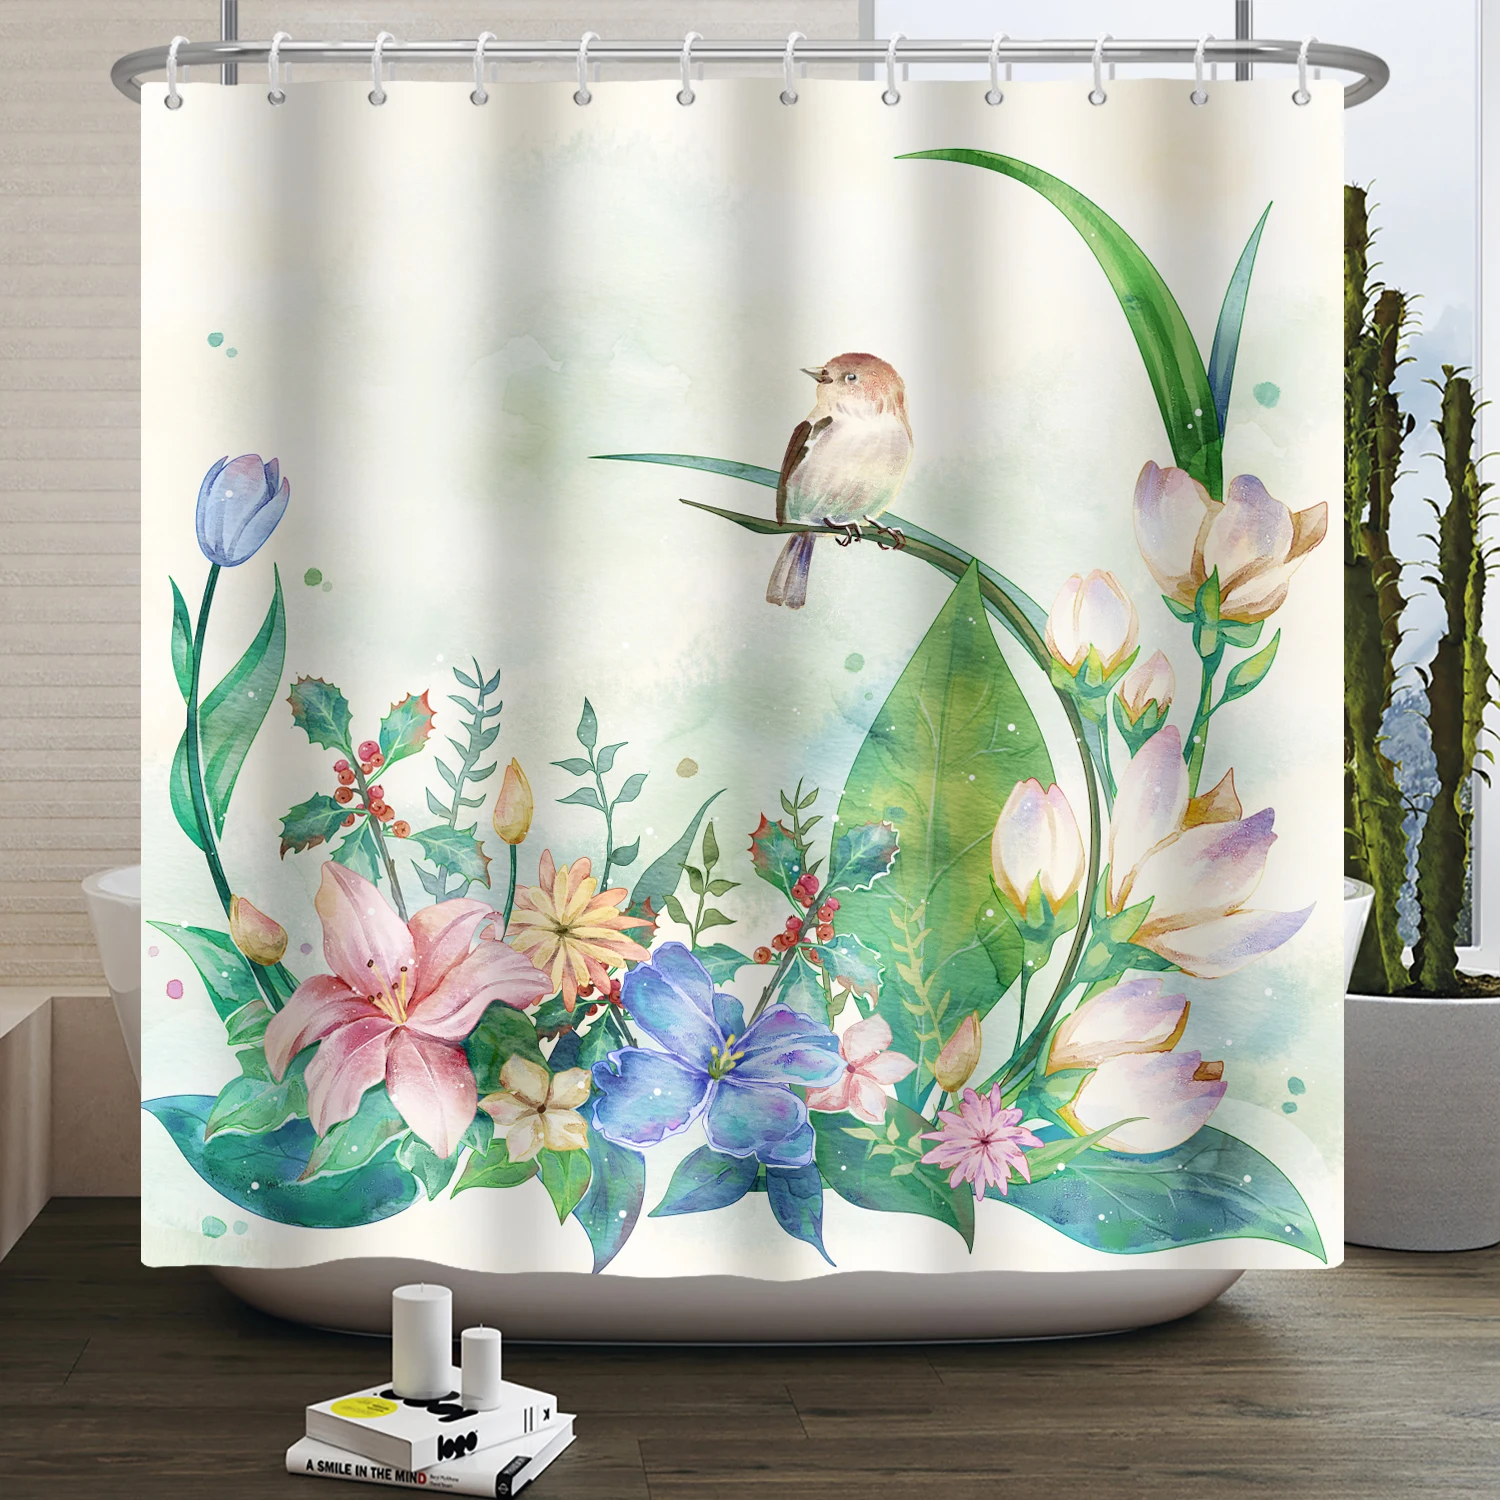 צבעי פרחים ציפור וילון המקלחת לשירותים להגדיר מודרני אביב יונק הדבש פרח הביתה אמבטיה אמבטיה עיצוב עם ווים